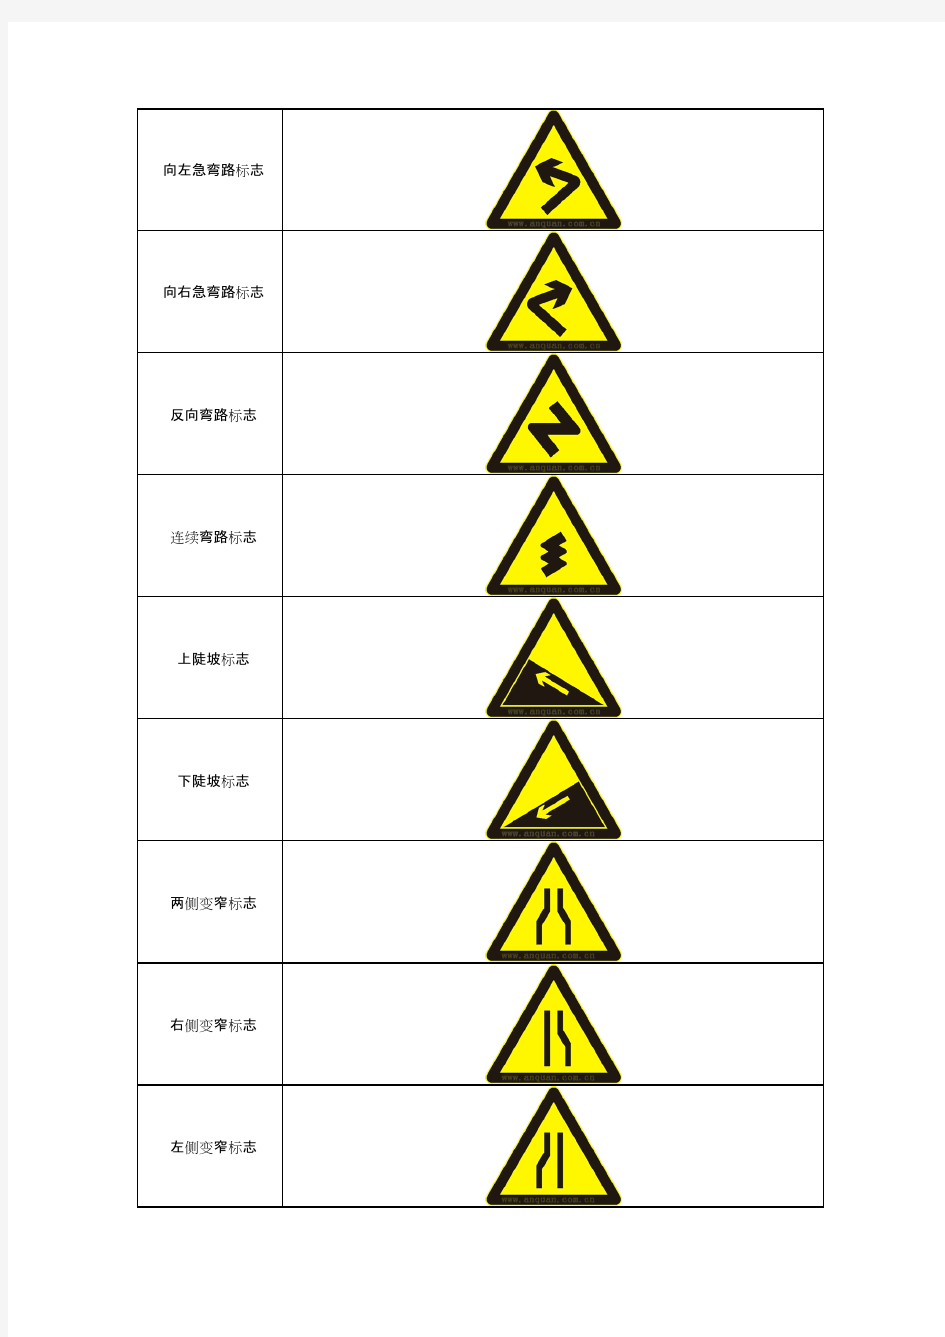 幼儿园安全标志-交通安全标志图